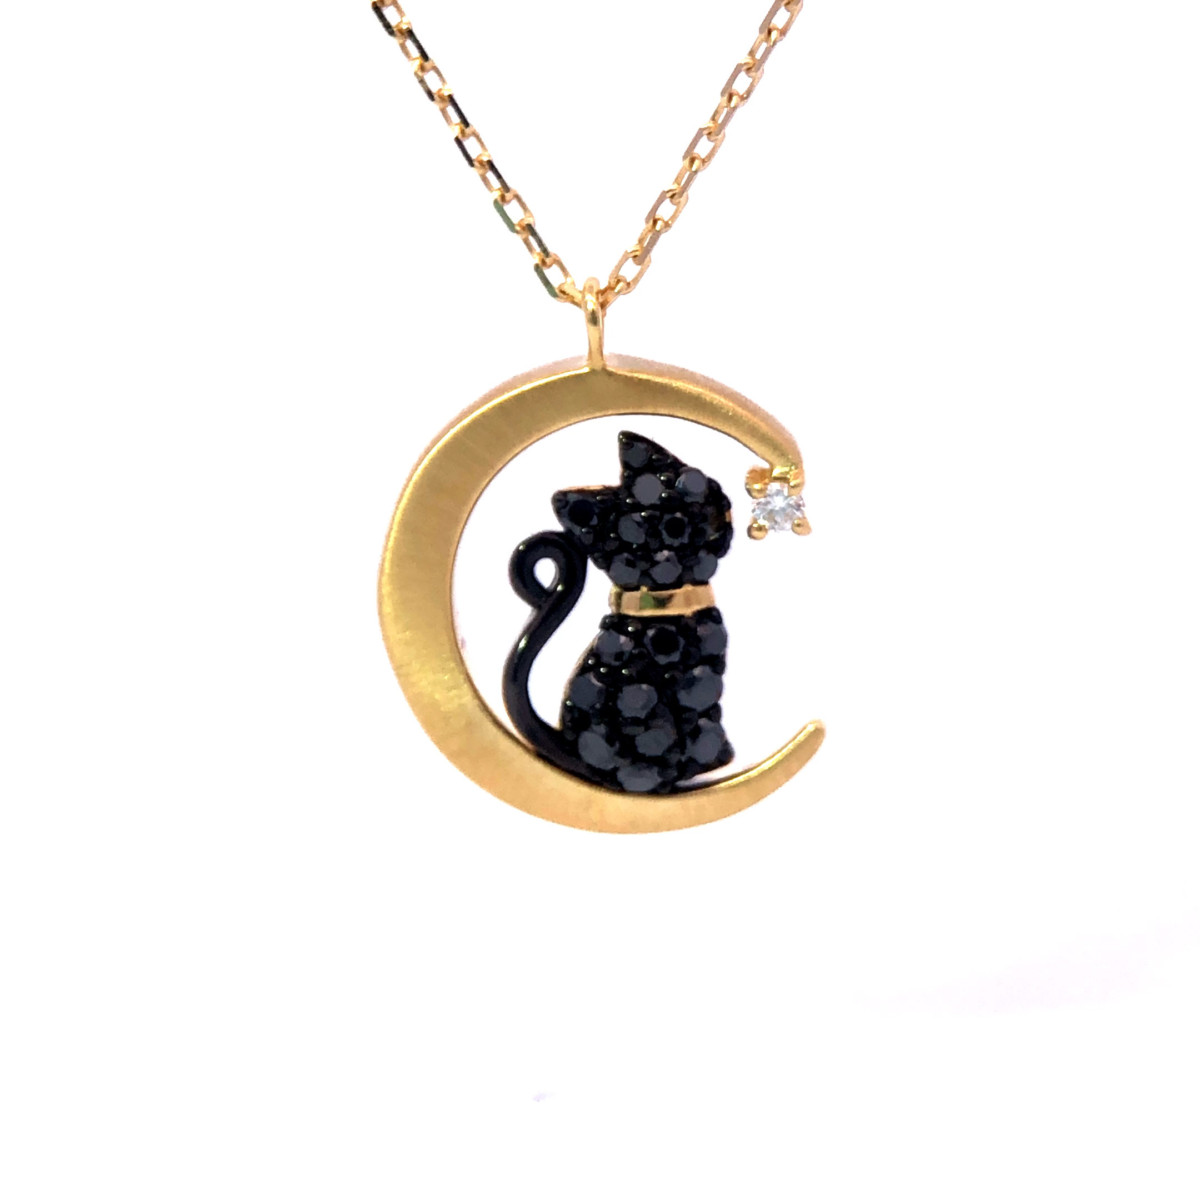 160,000税込 K18ブラックダイヤモンド 黒猫 ペンダントネックレス 